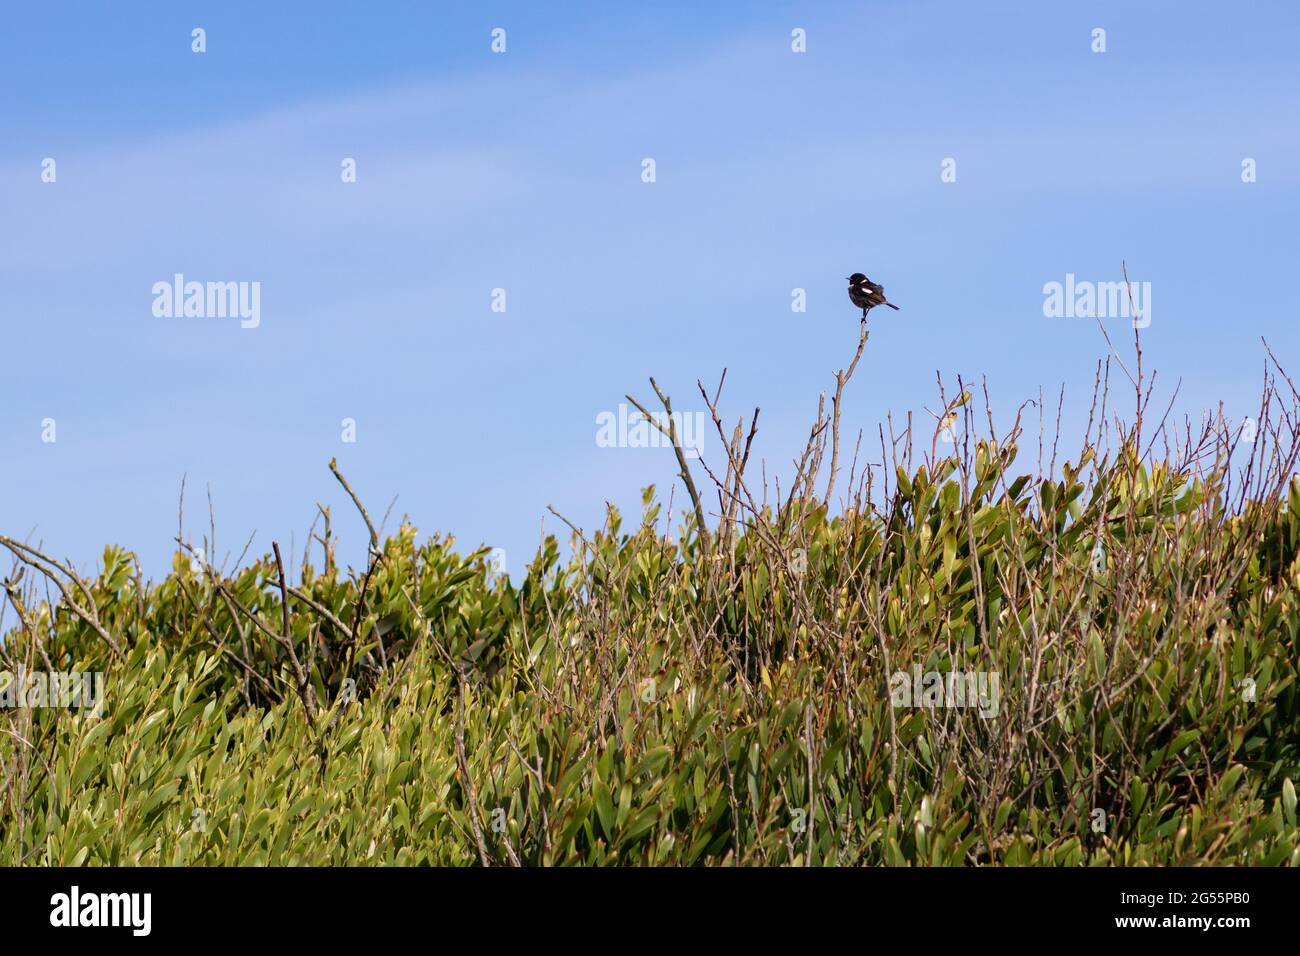 Piedra africana de pie sobre una rama de arbusto contra el cielo azul. Fotografía de paisaje de aves en la zona costera con espacio vacío para texto Foto de stock